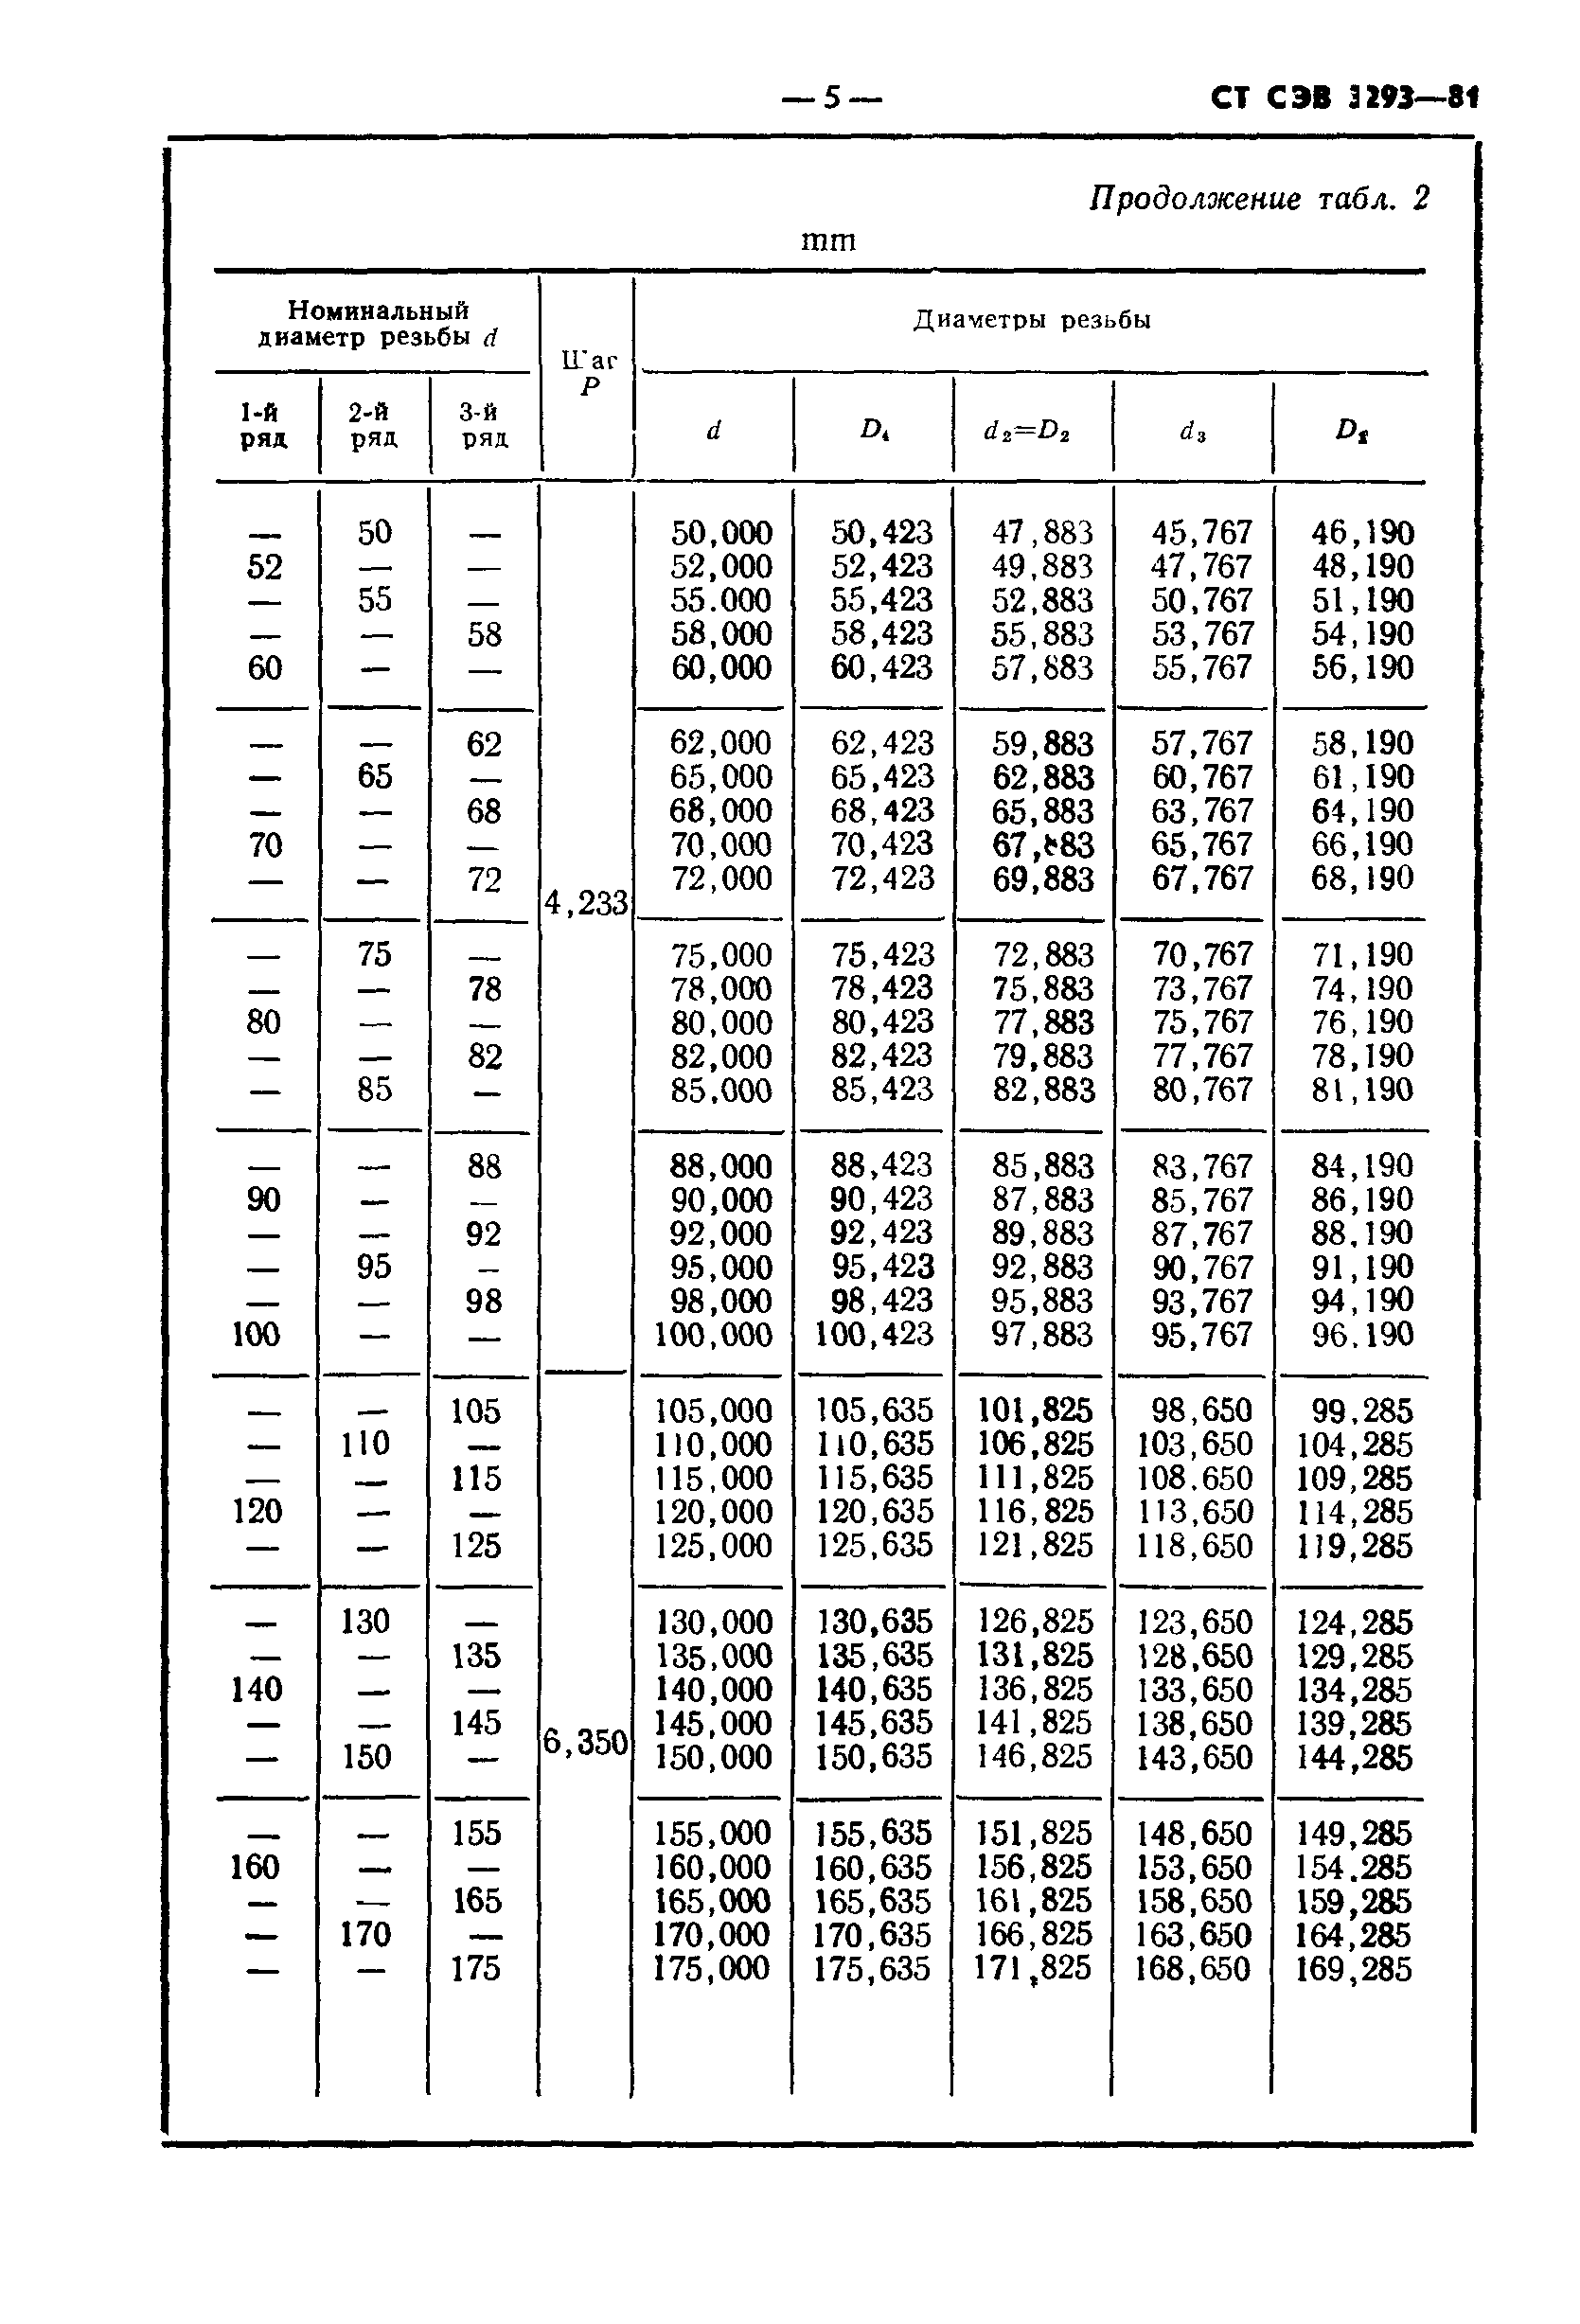 СТ СЭВ 3293-81